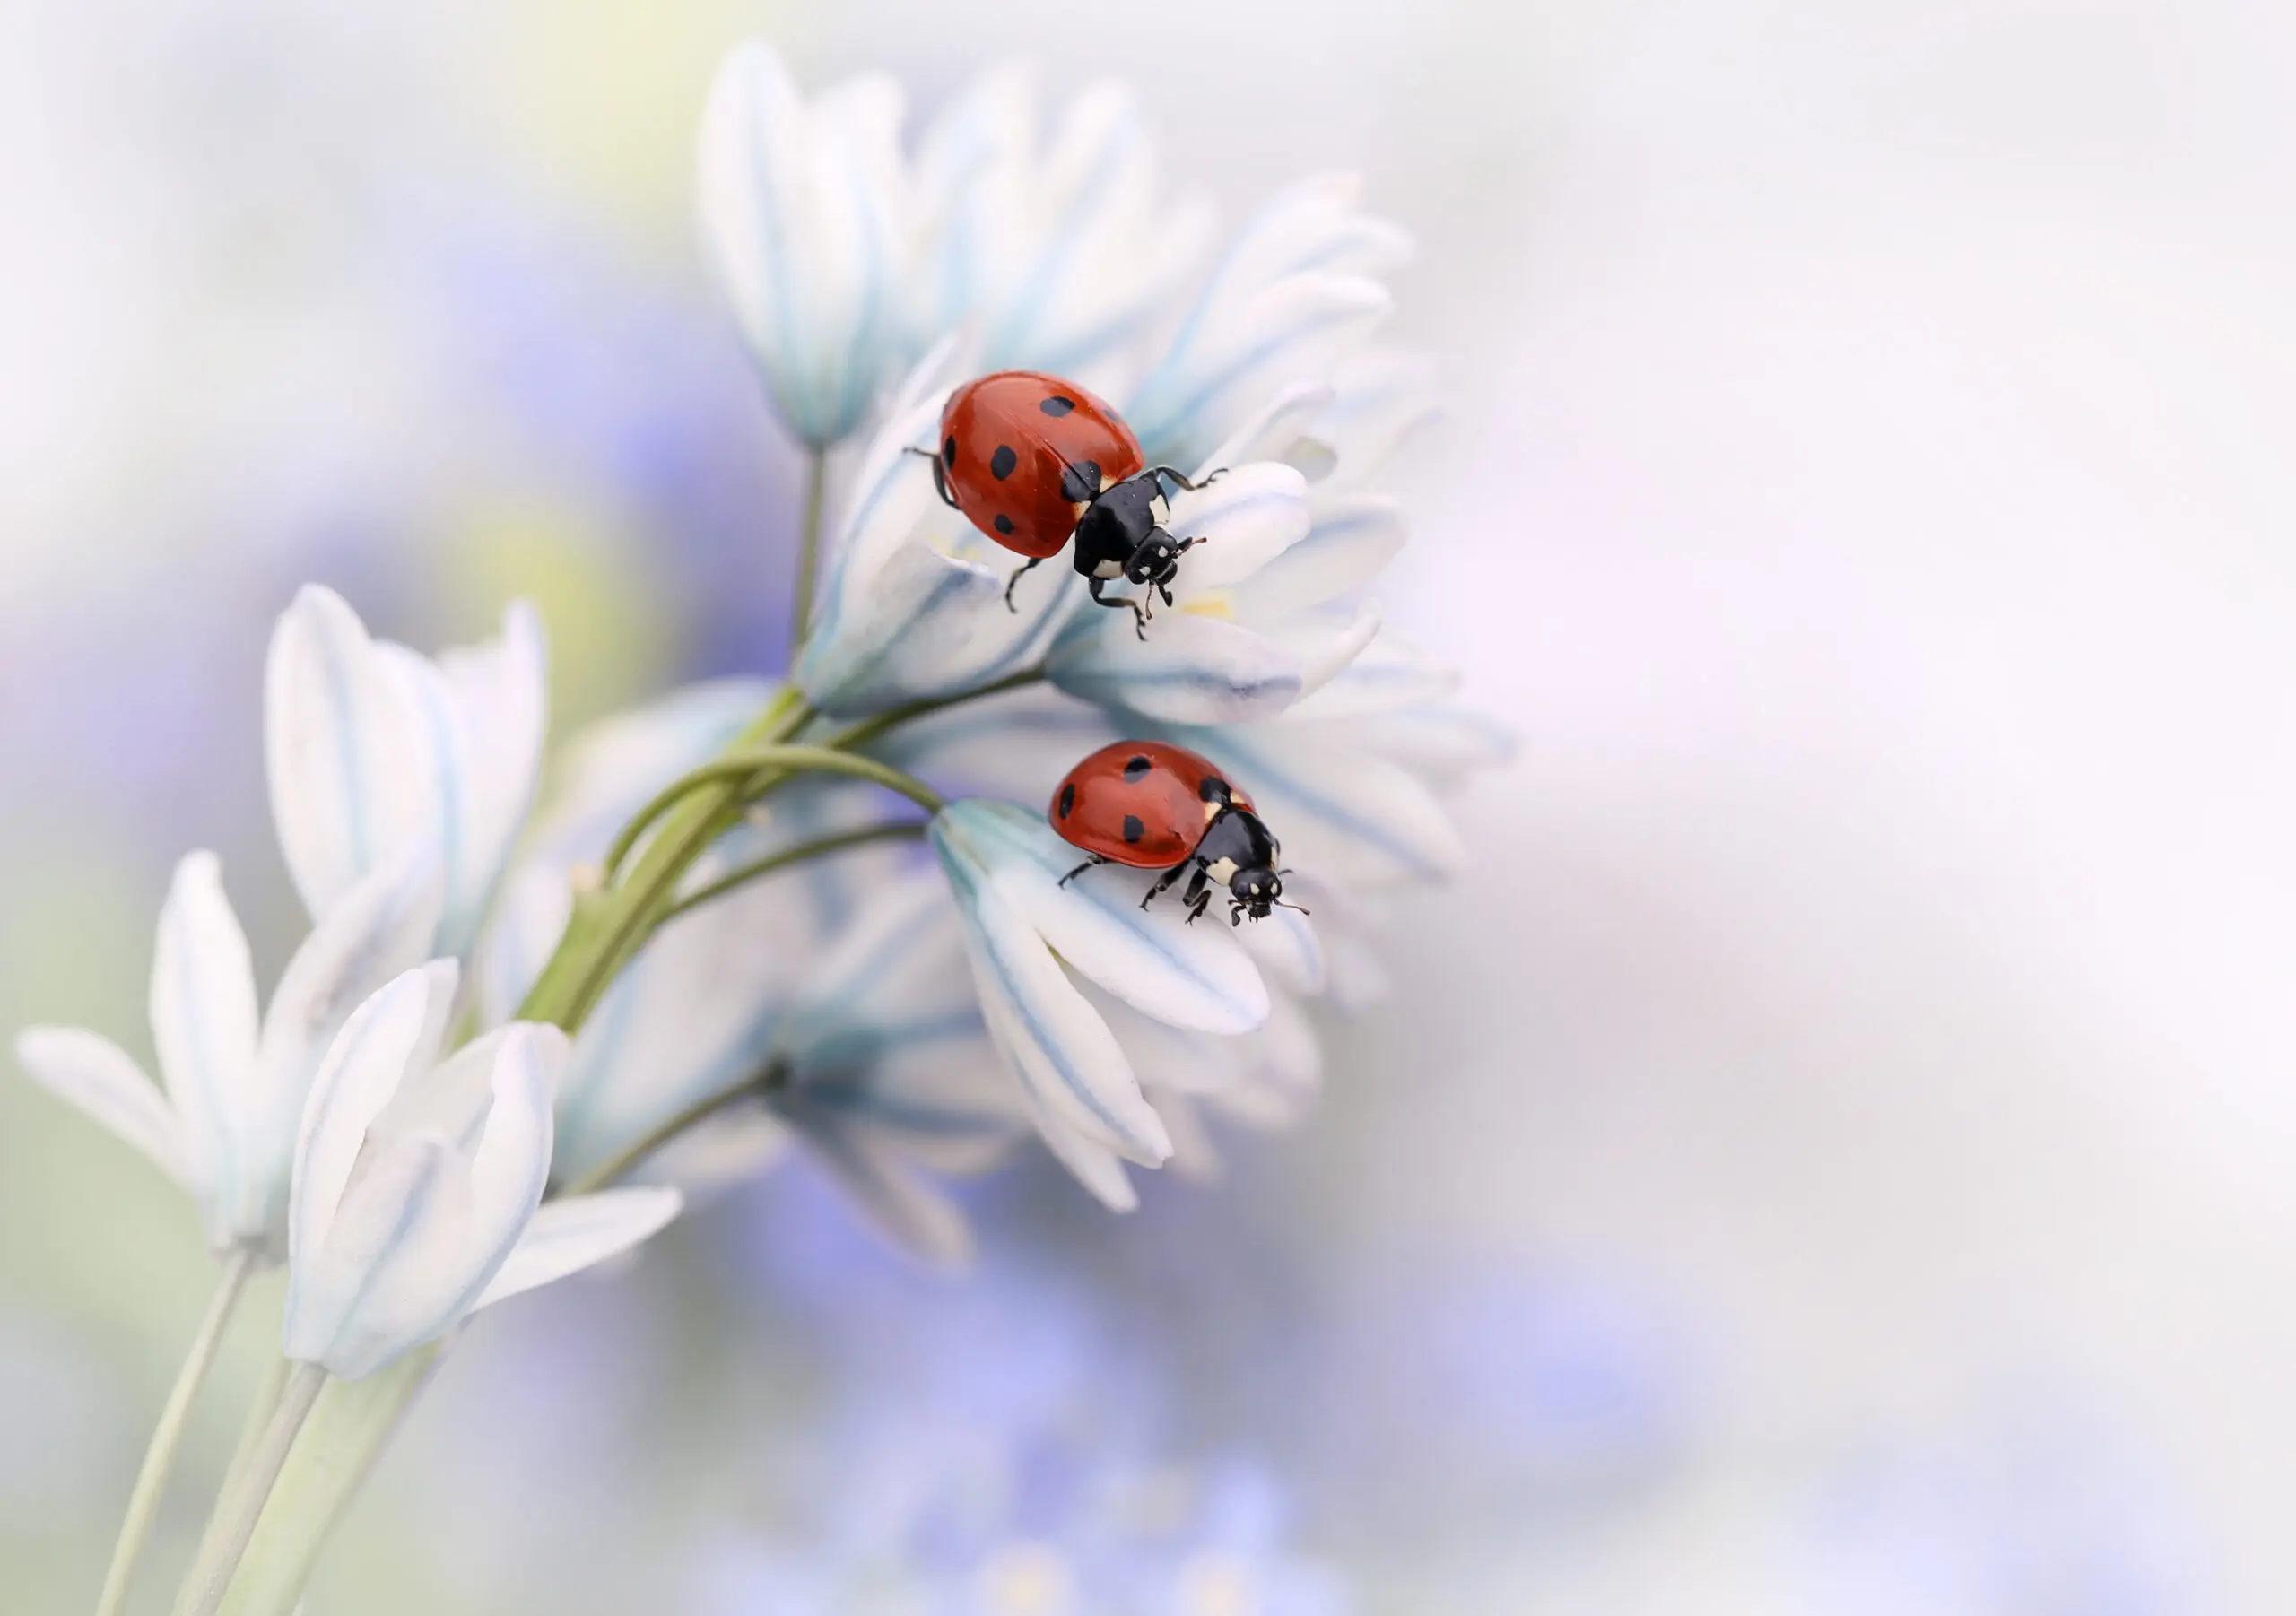 Wandbild (2937) Ladybirds präsentiert: Tiere,Natur